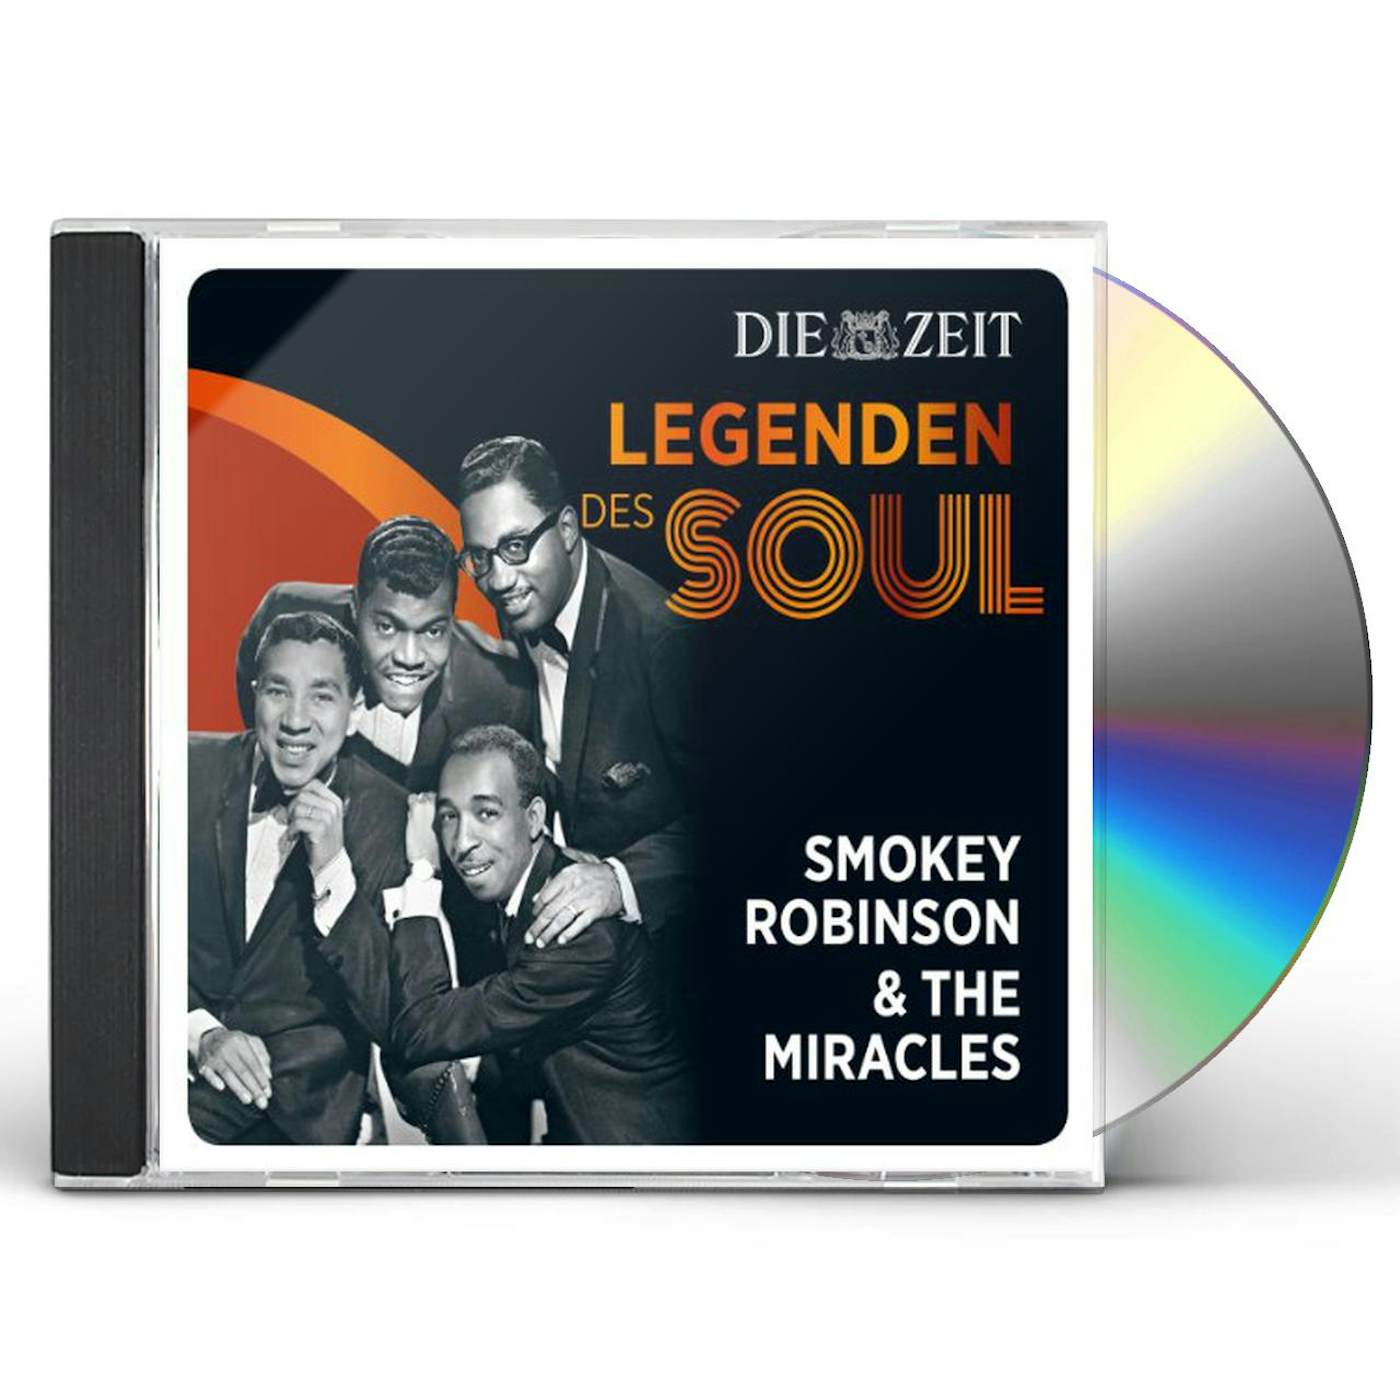 Smokey Robinson & The Miracles DIE ZEIT EDITION-LEGENDEN DES SOUL CD